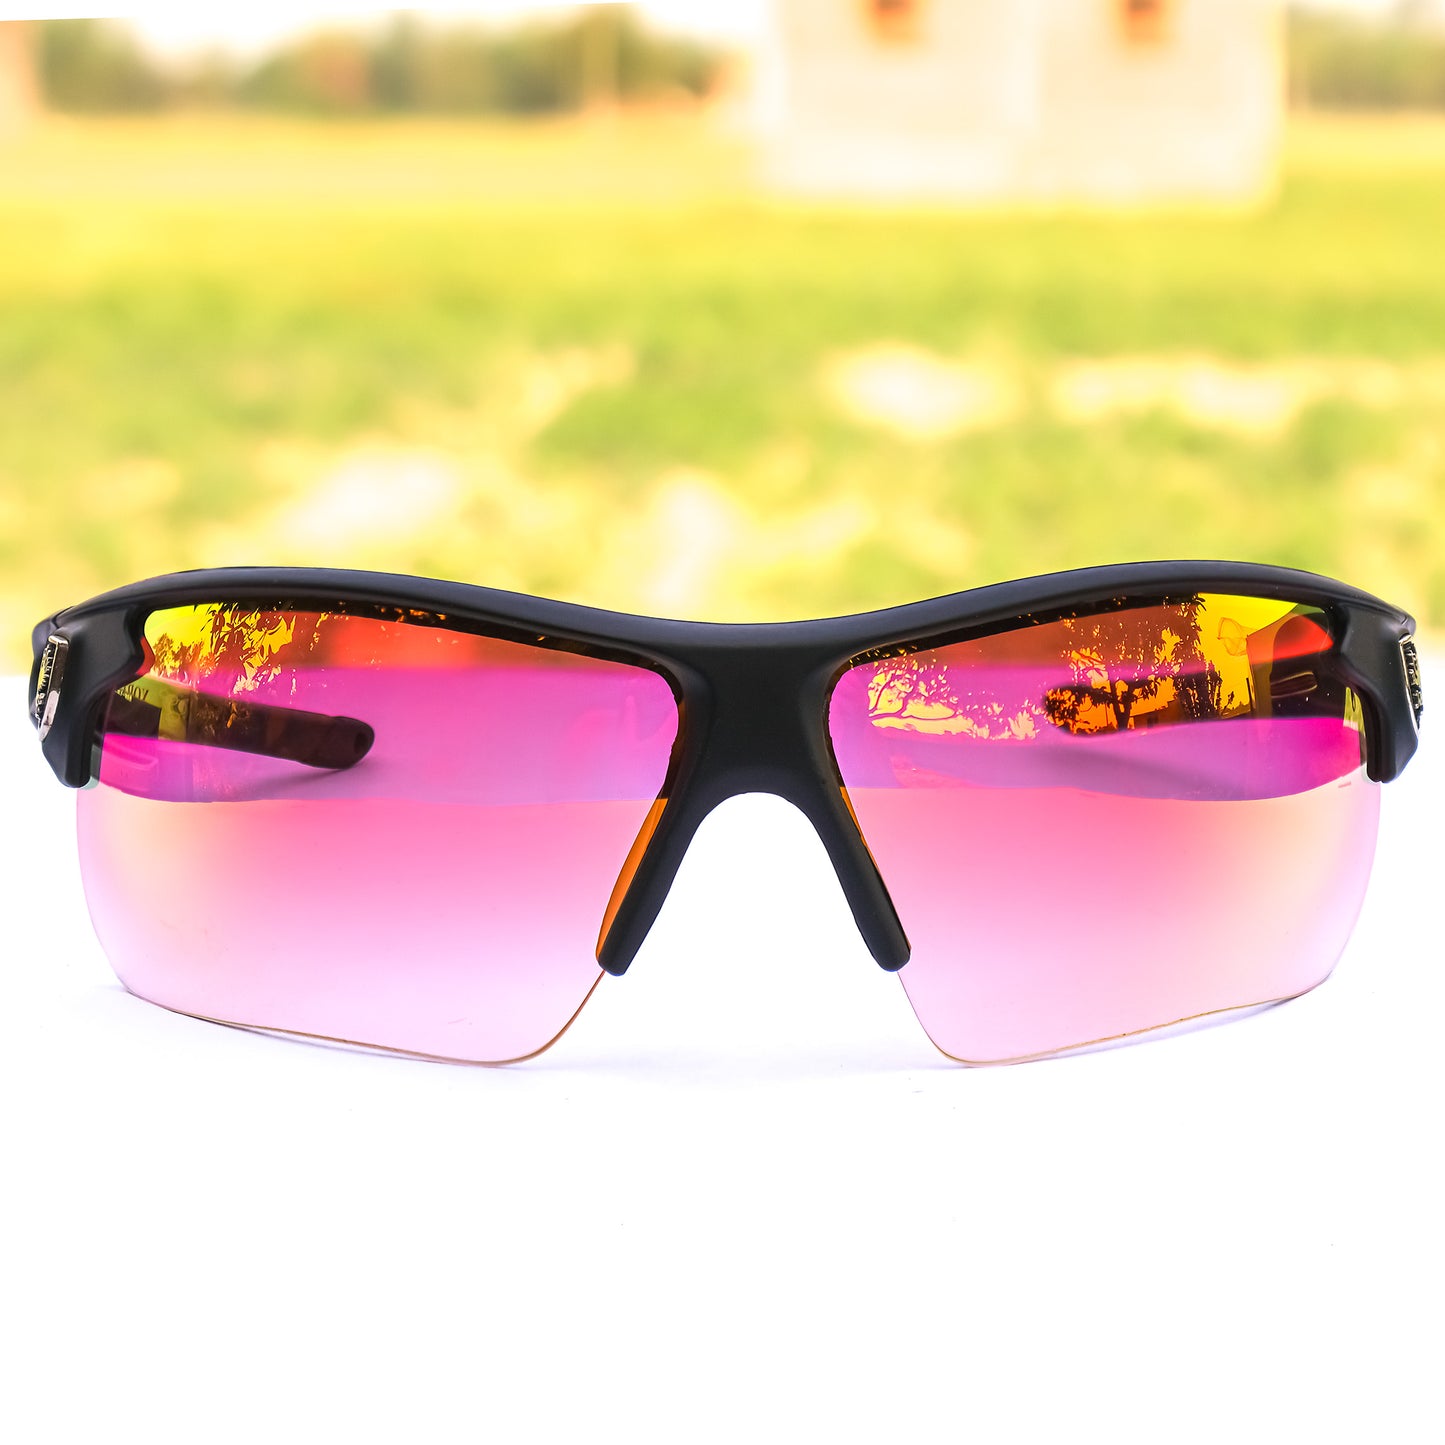 Jiebo Latest Cricket Sports Sunglasses